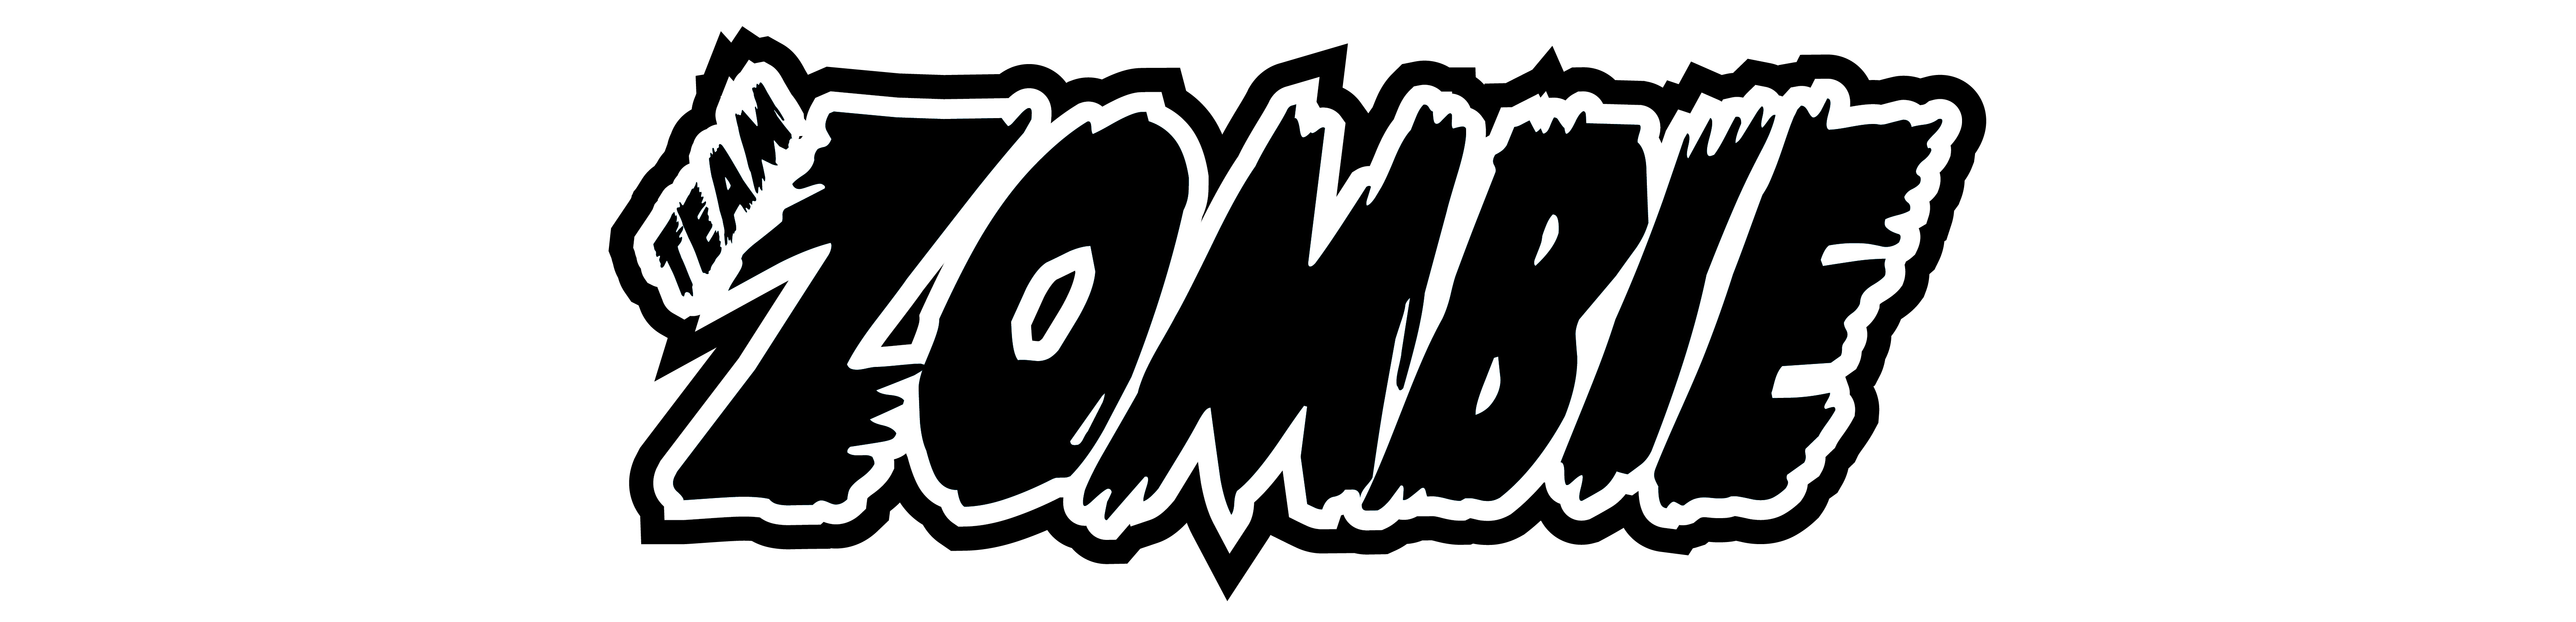 team-zombie